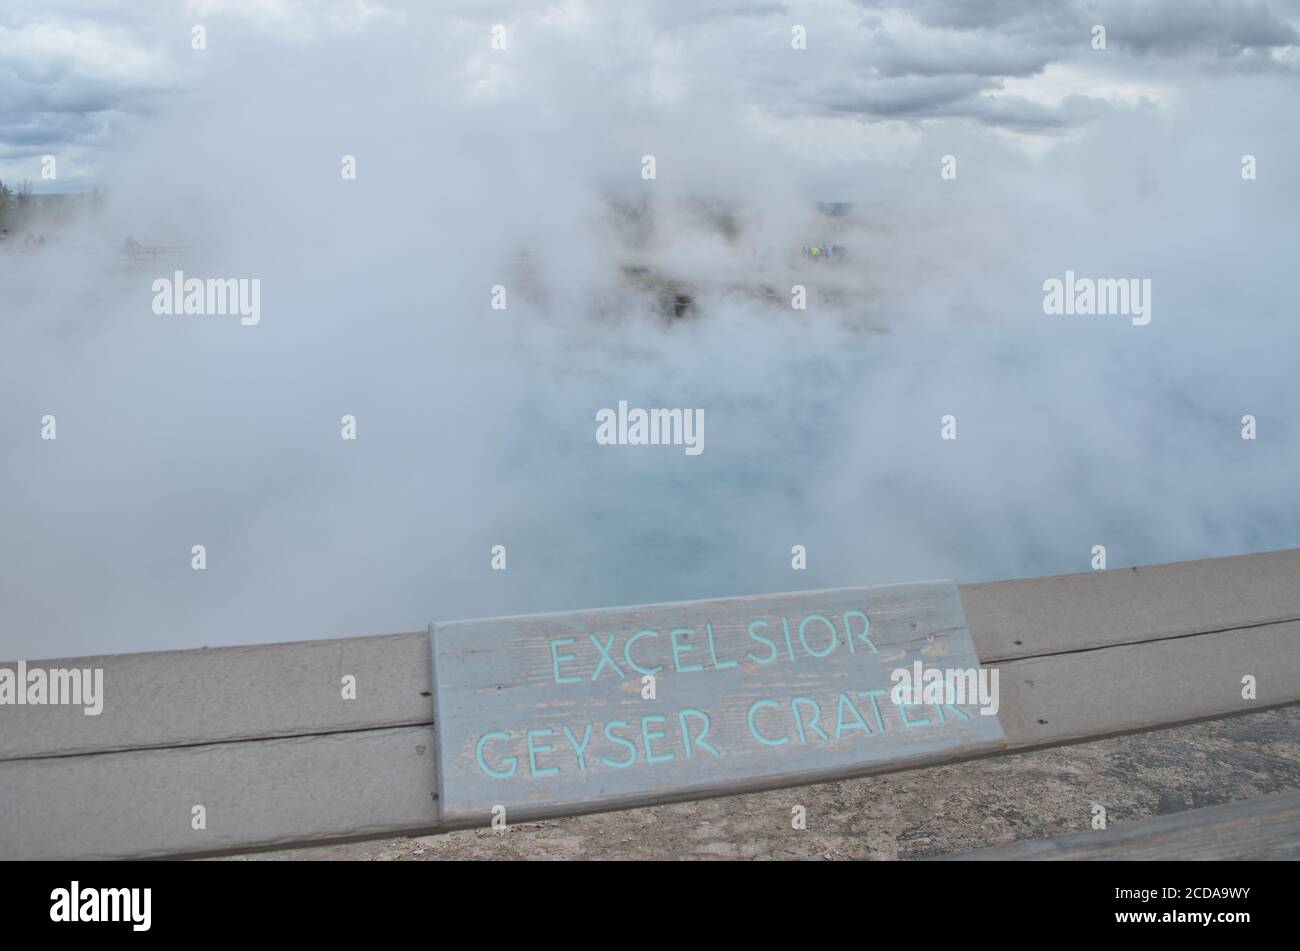 YELLOWSTONE-NATIONALPARK, WYOMING - 9. JUNI 2017: Dichter Dampf zieht vom Excelsior Geyser Crater im mittleren Geyser Basin ab Stockfoto